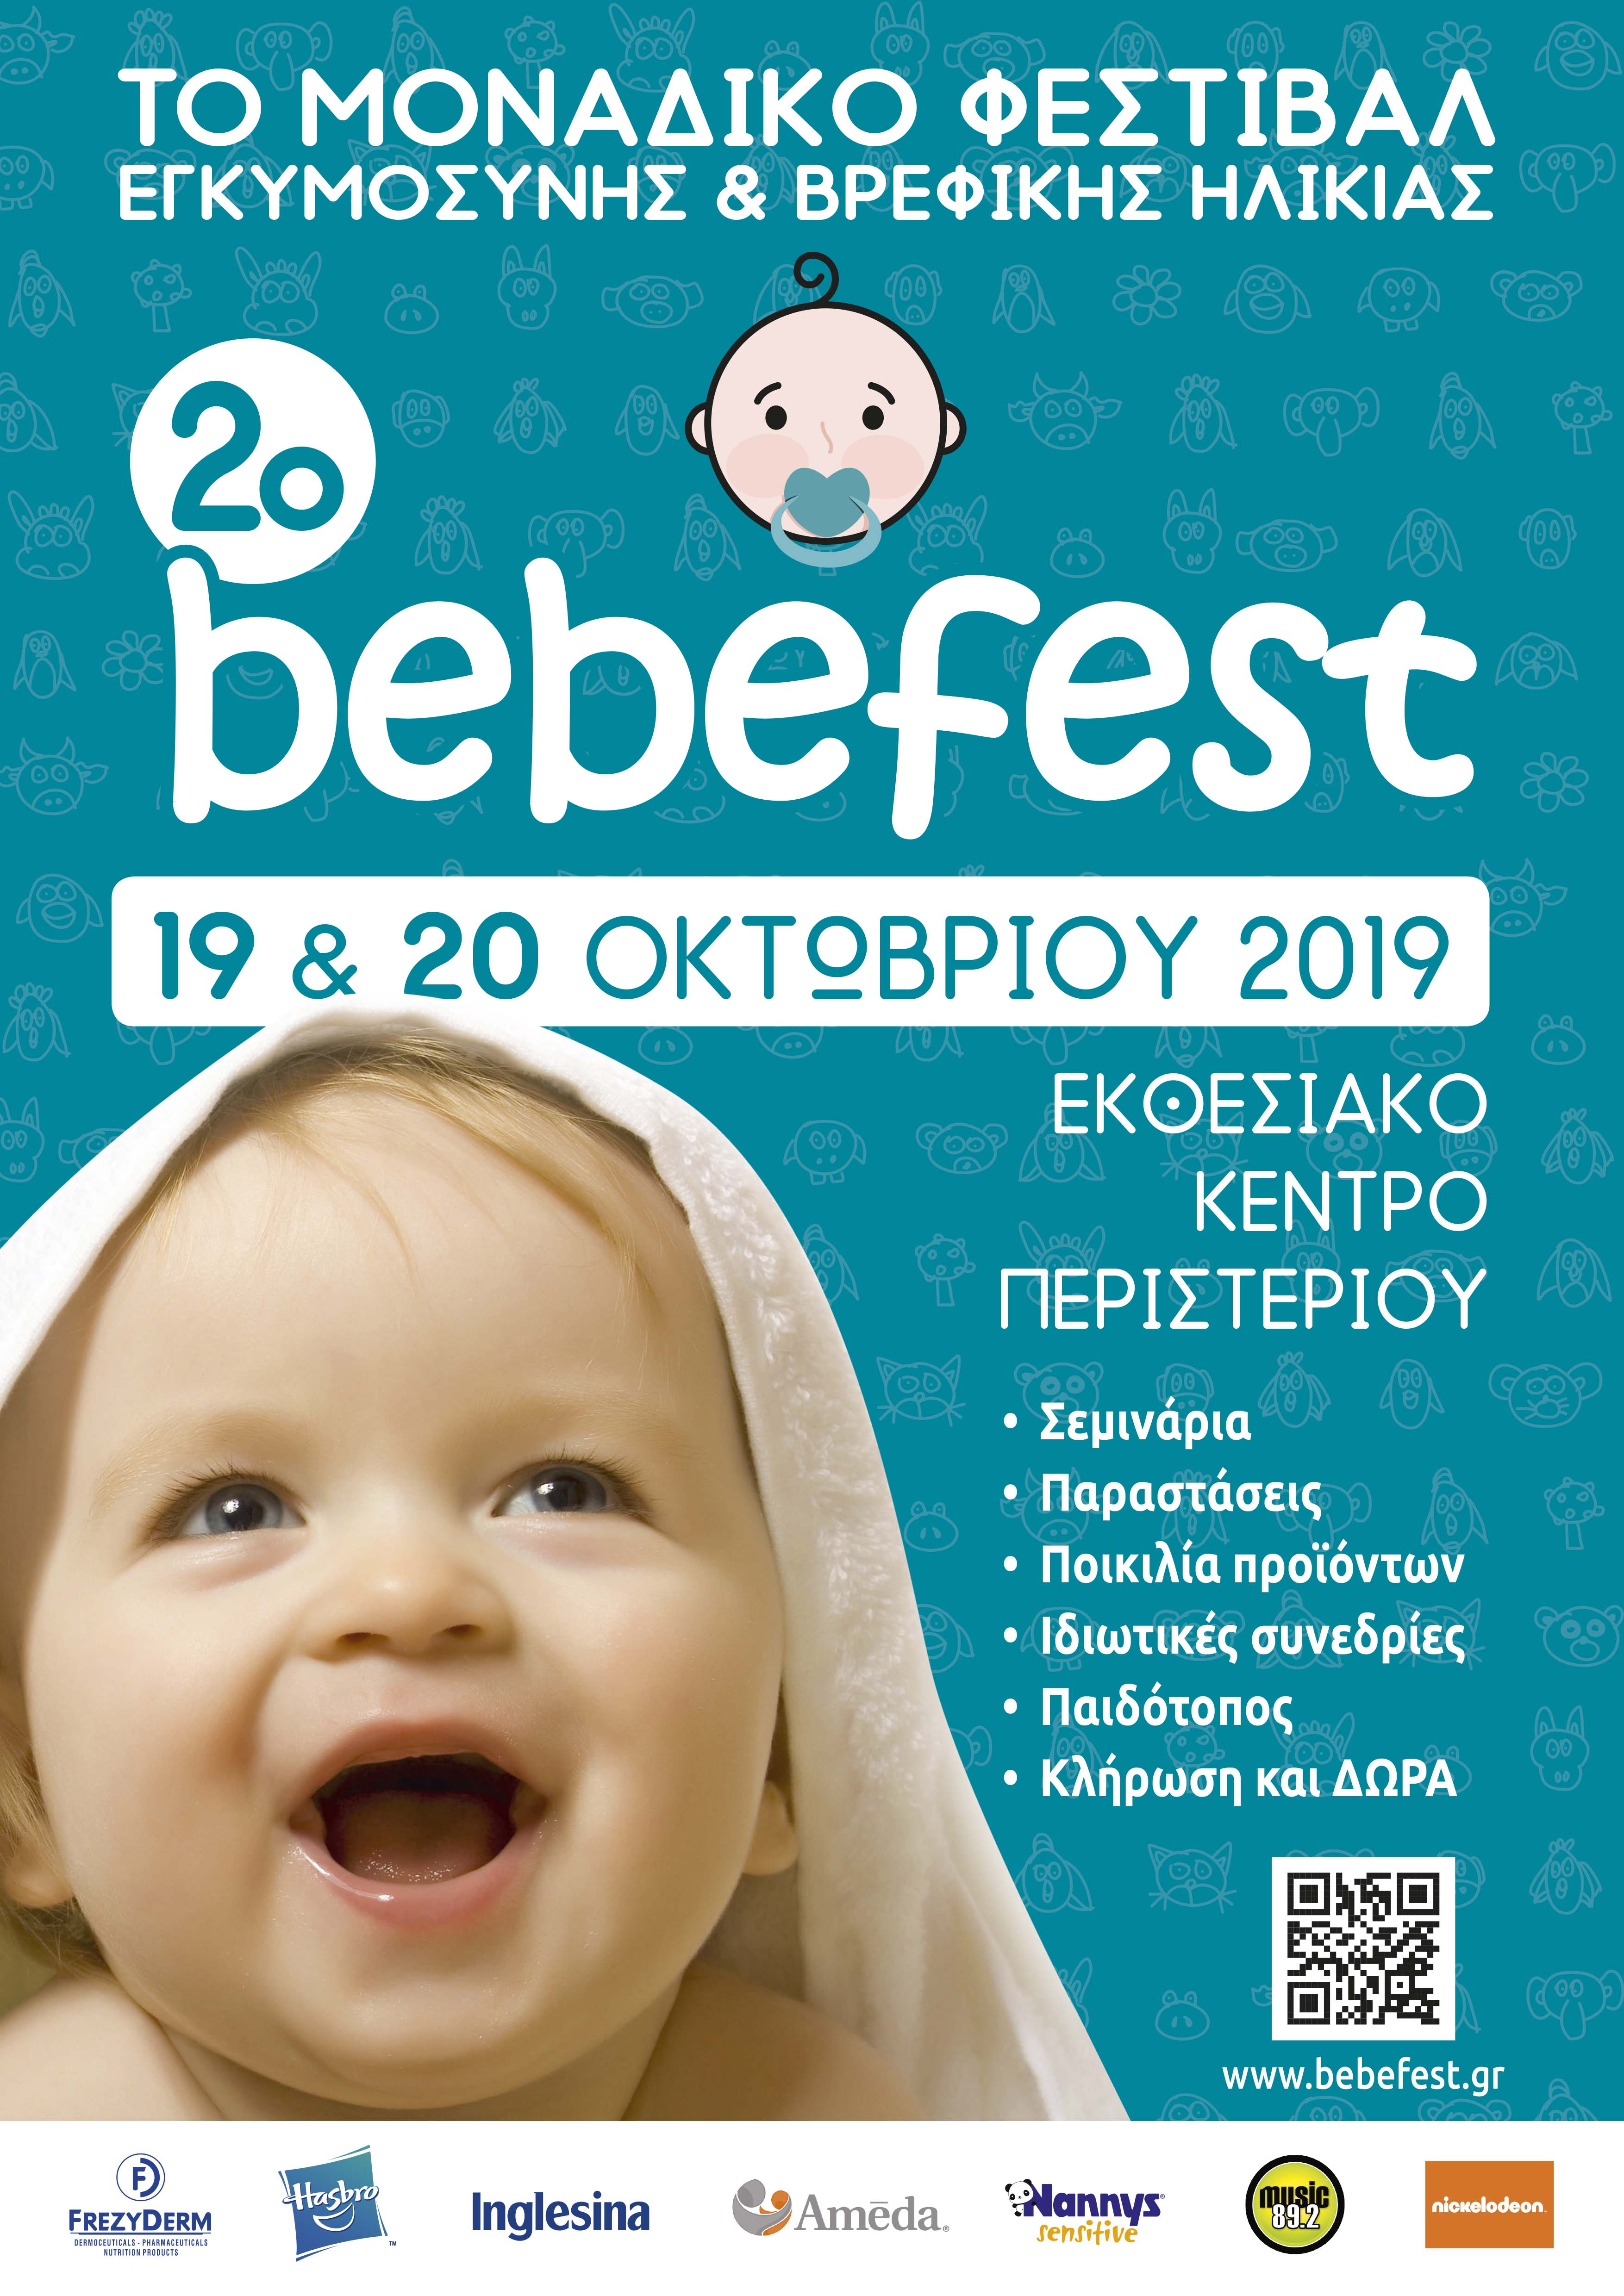 BebeFest2019 Afises best